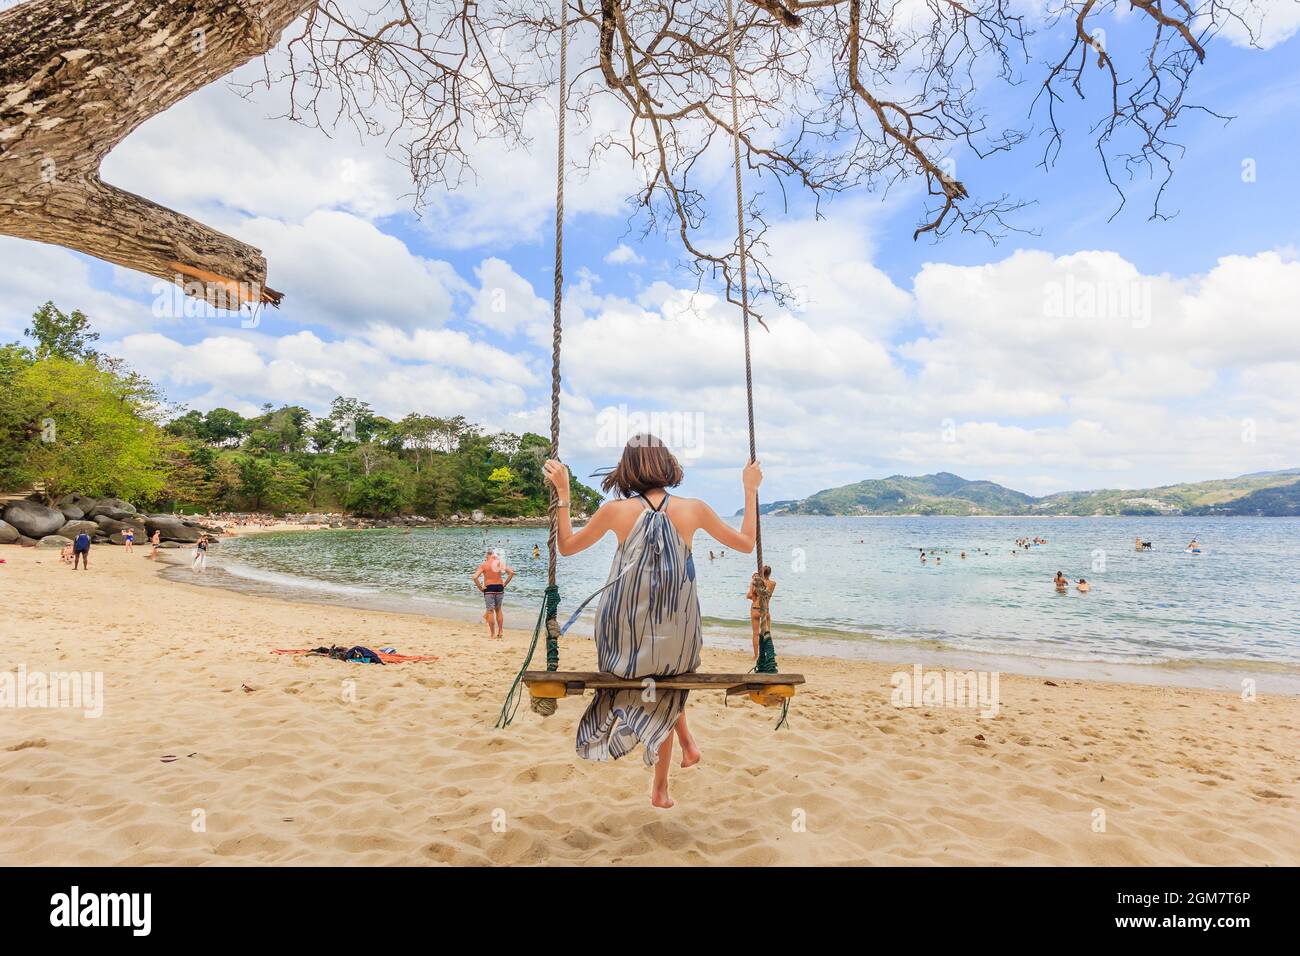 Les jeunes femmes profitent de Paradise Beach pendant une journée ensoleillée à Phuket, en Thaïlande. Patong est une plage célèbre située sur la côte ouest de Phuket Banque D'Images